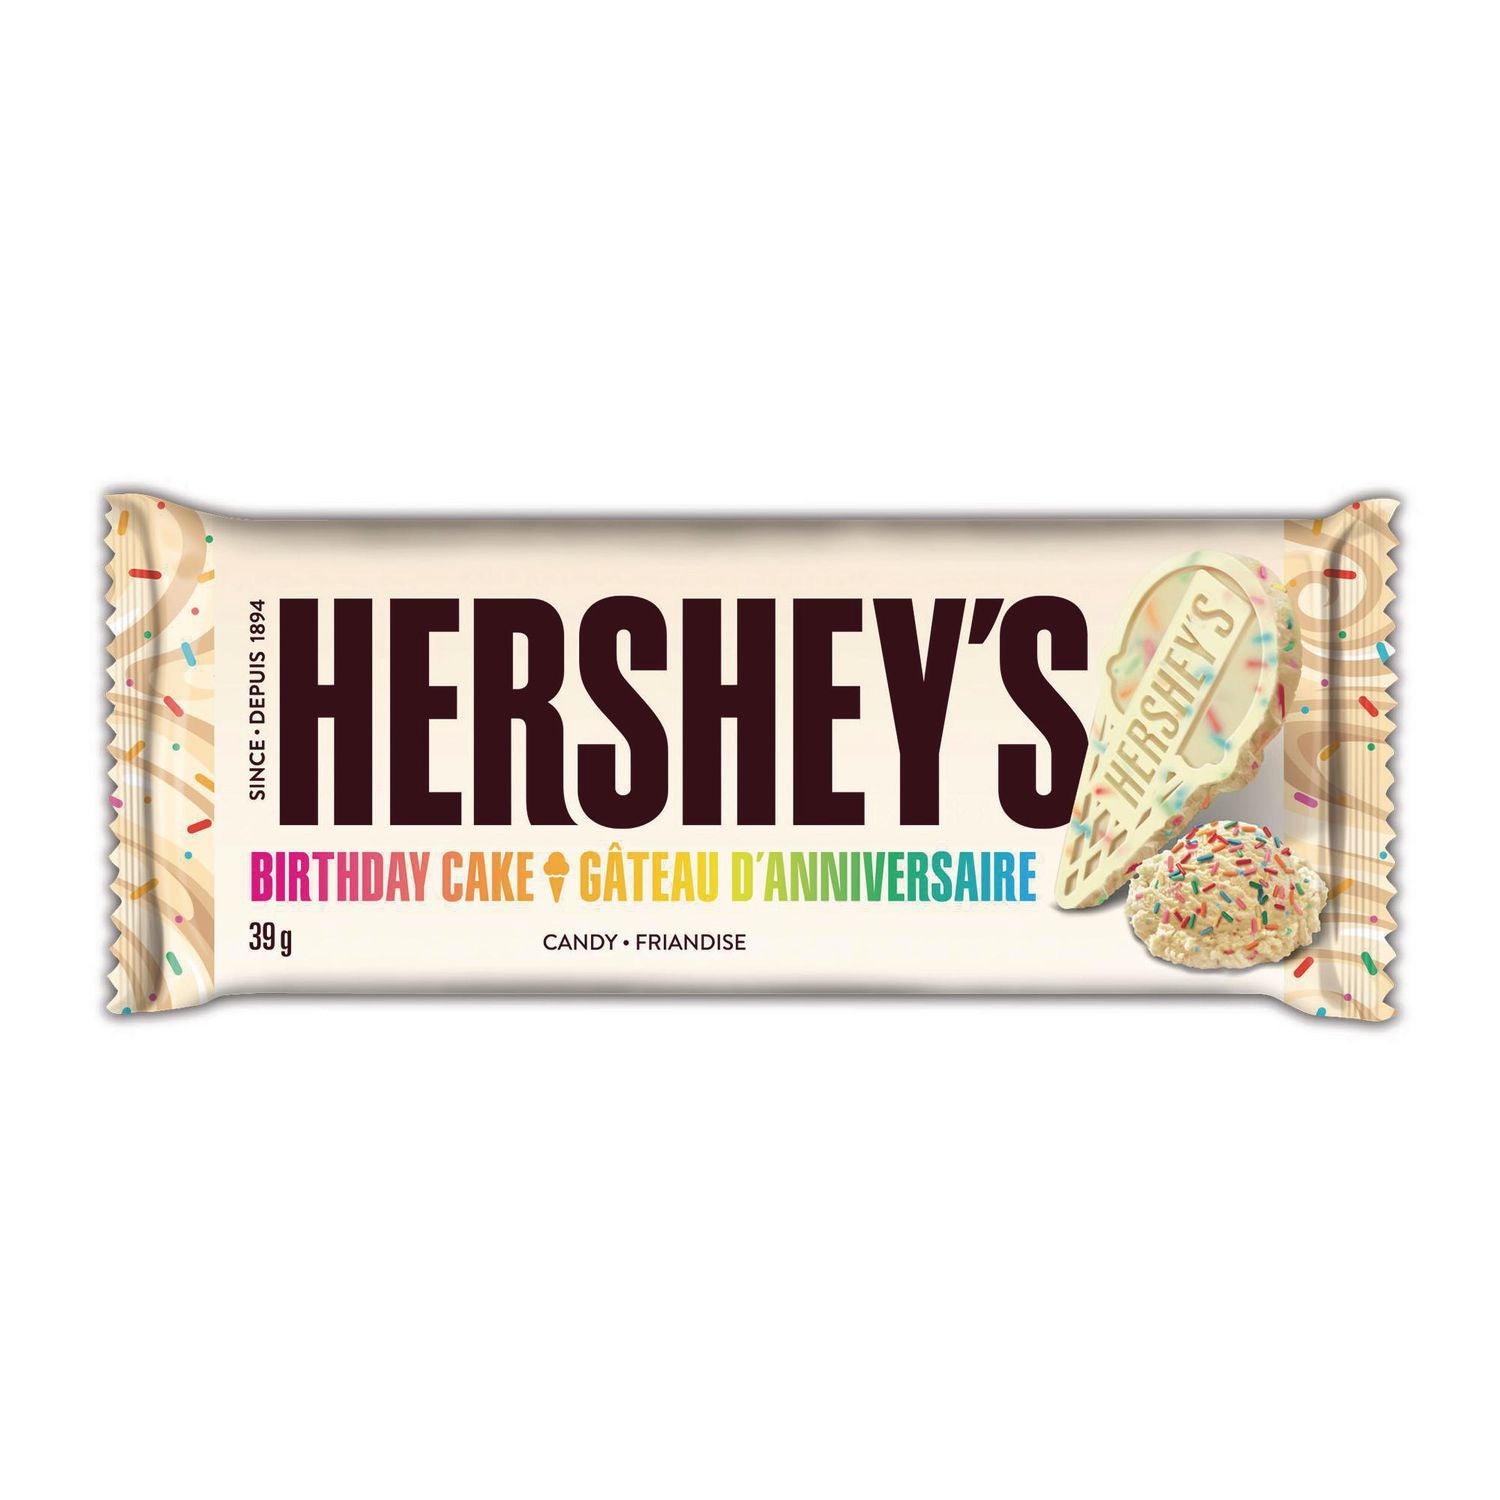 Hershey's Ice Cream Bars - Birthday Cake